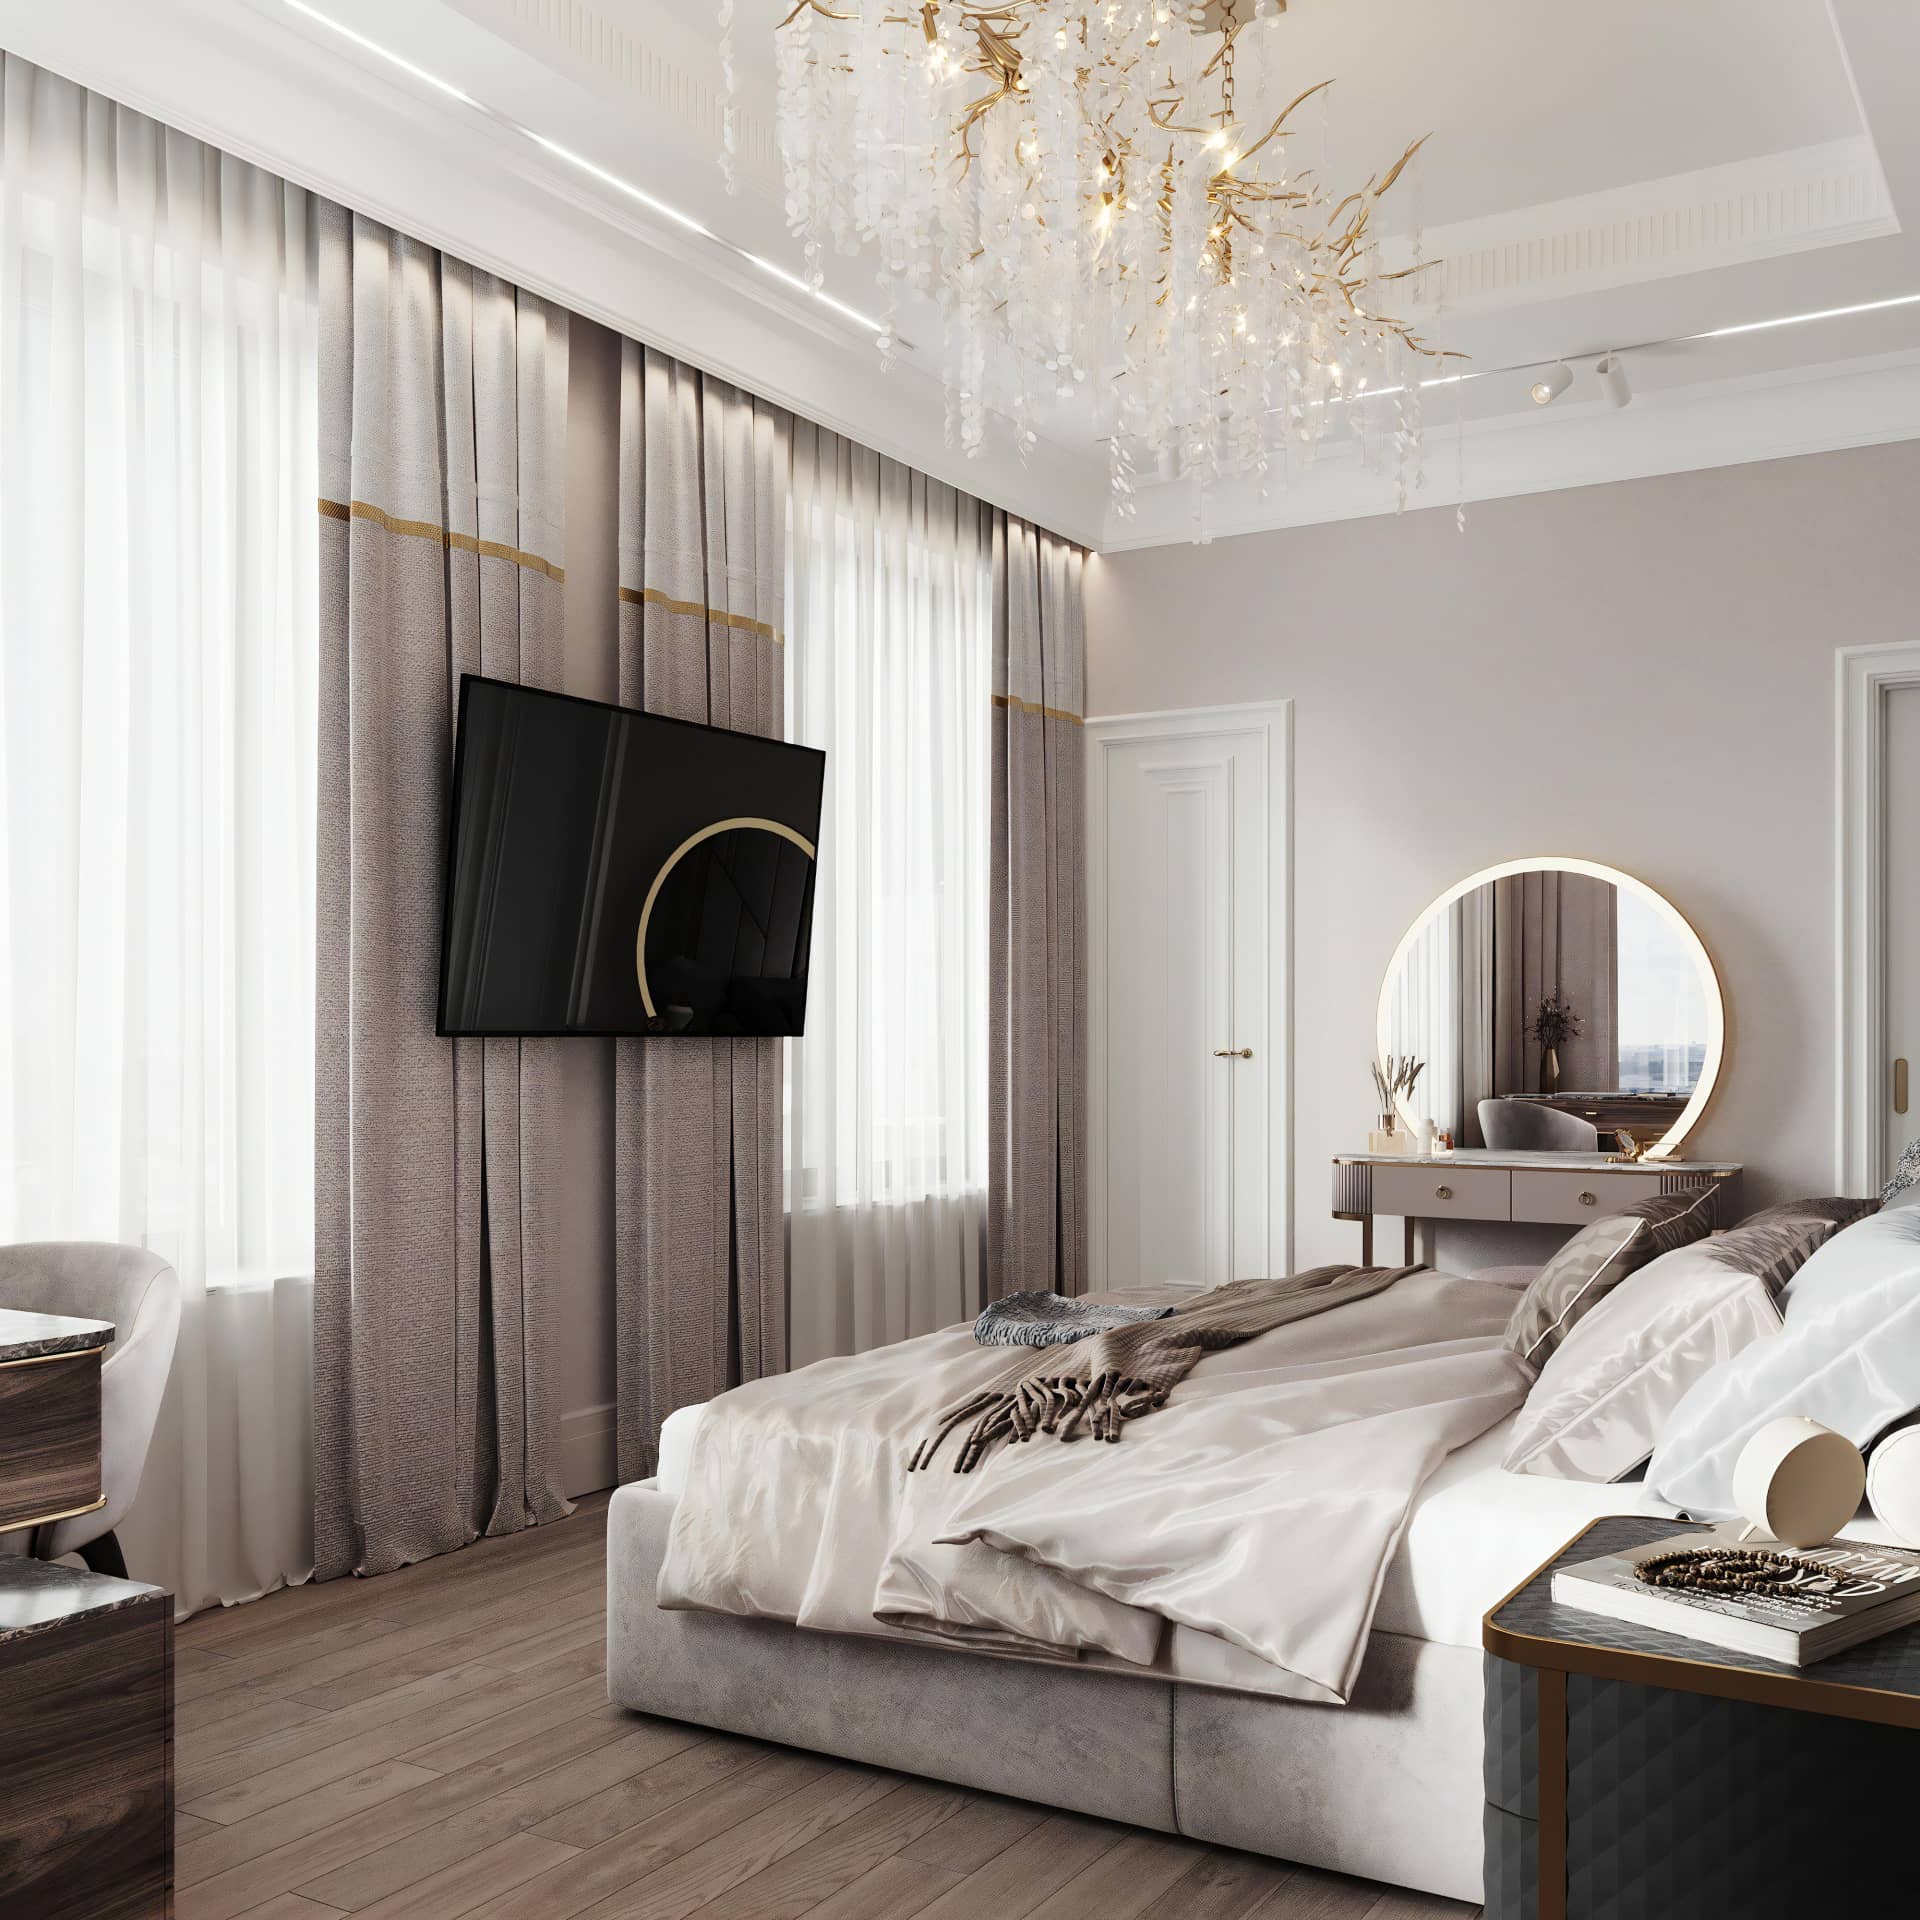 Оформление интерьера спальни в стиле современной классики. Фото № 71419.